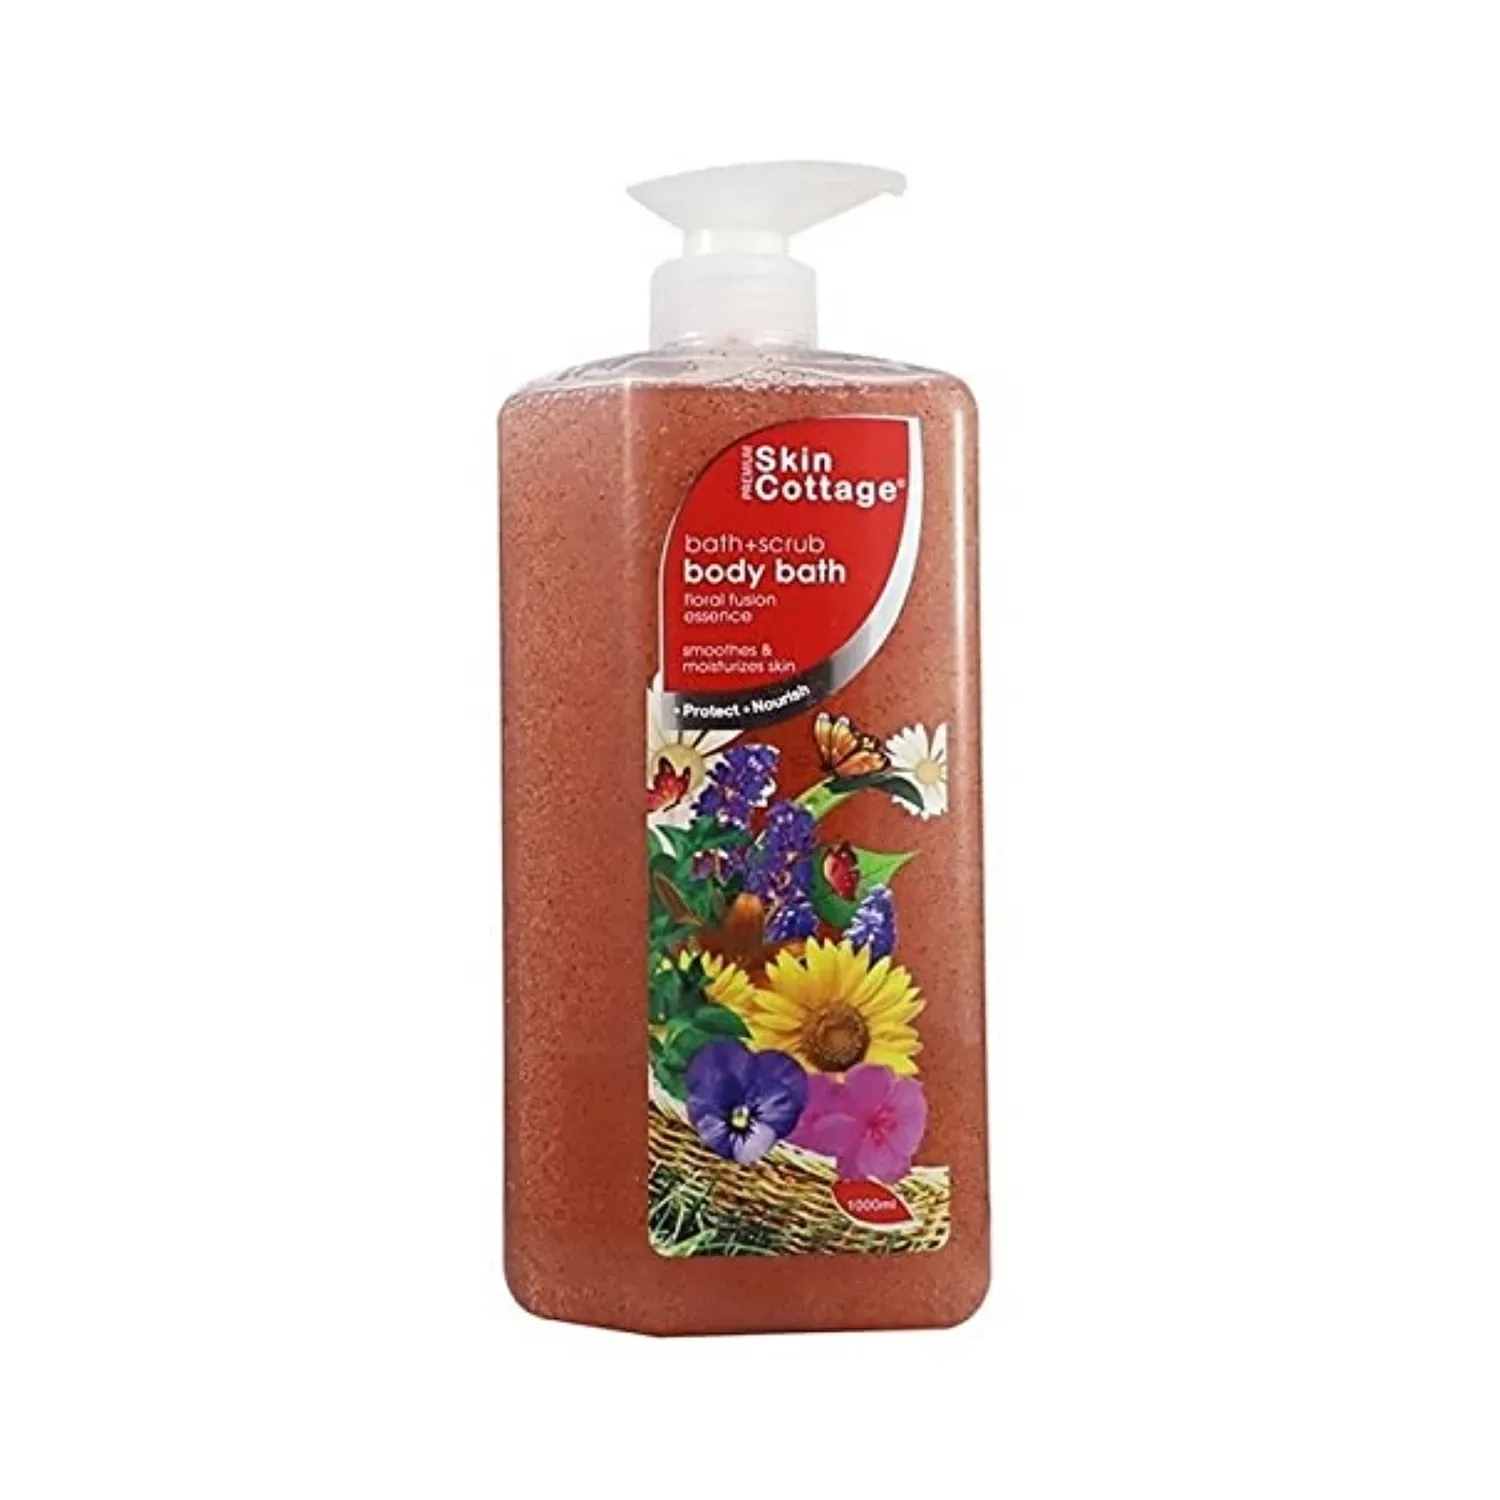 SKIN COTTAGE | SKIN COTTAGE Floral Fusion Essence Body Bath + Scrub (1000ml)